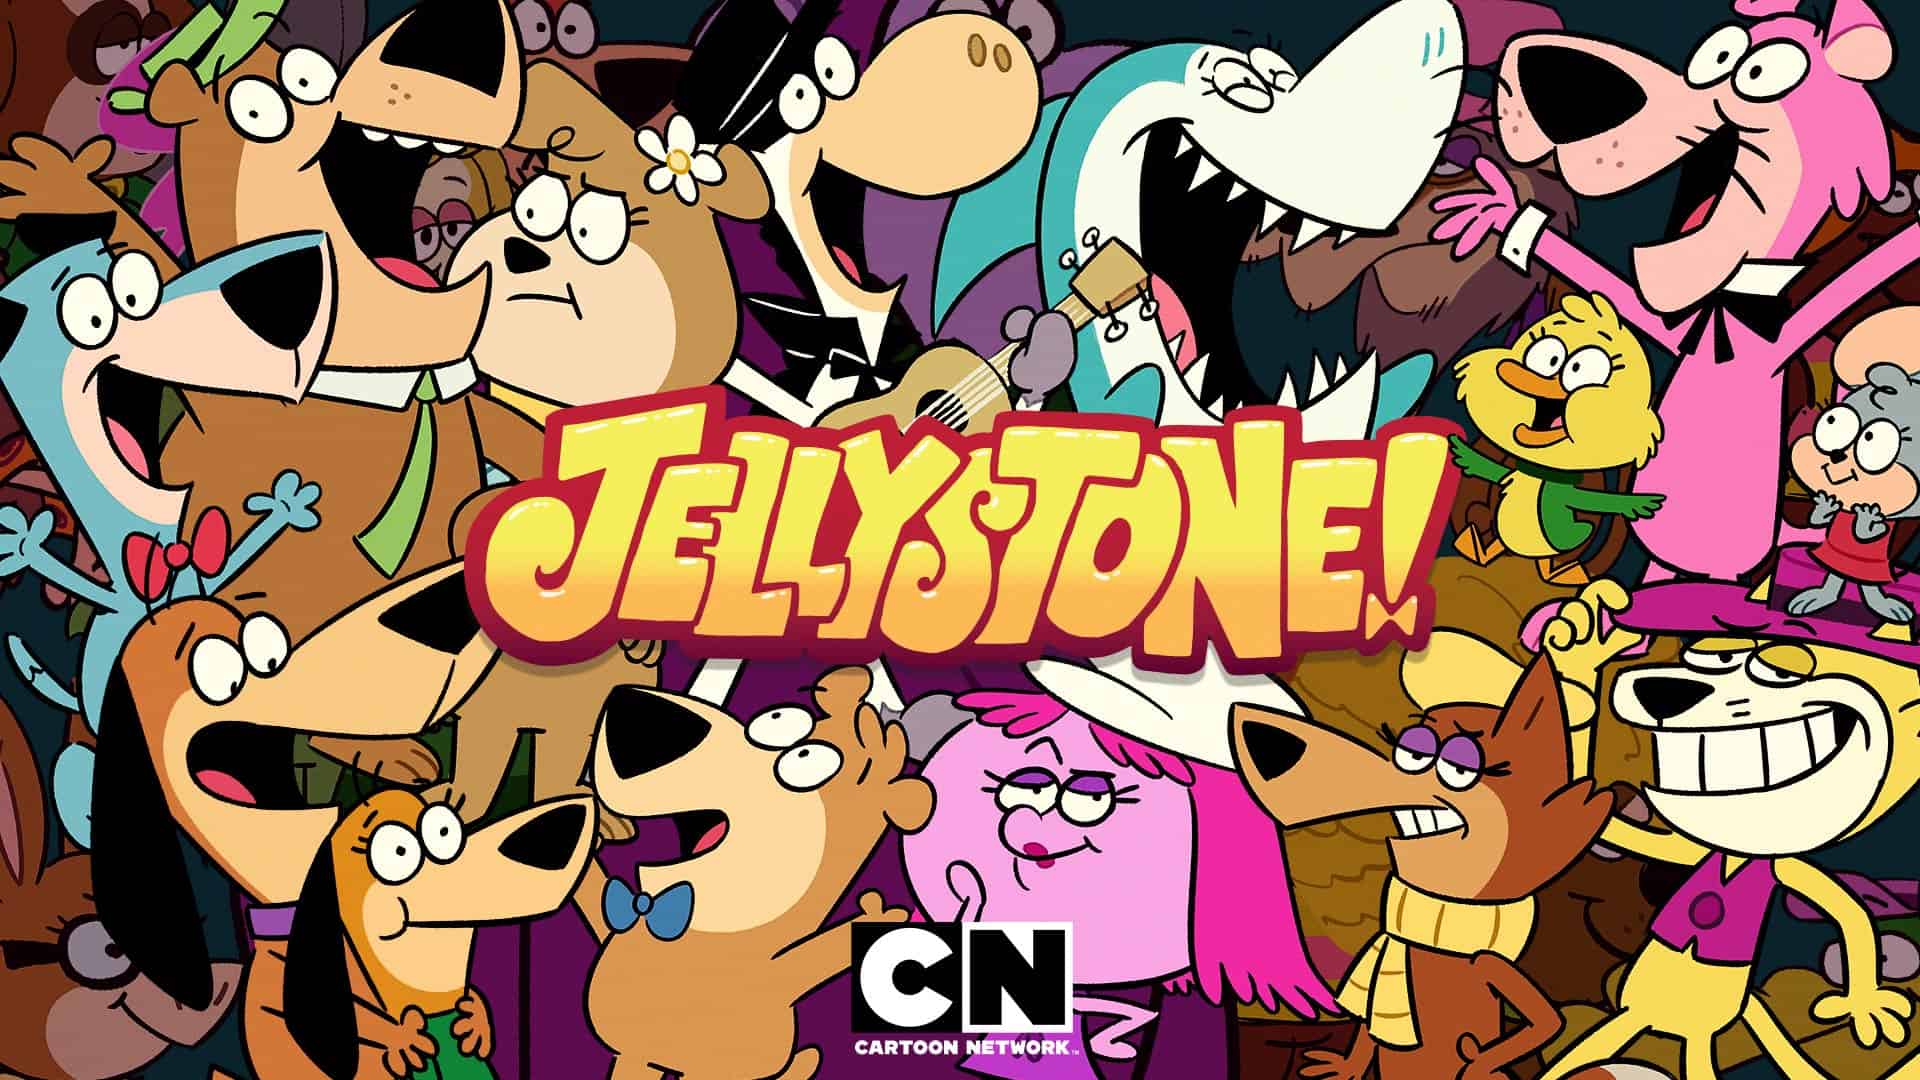 Watch Cartoon Network's Jellystone on DStv